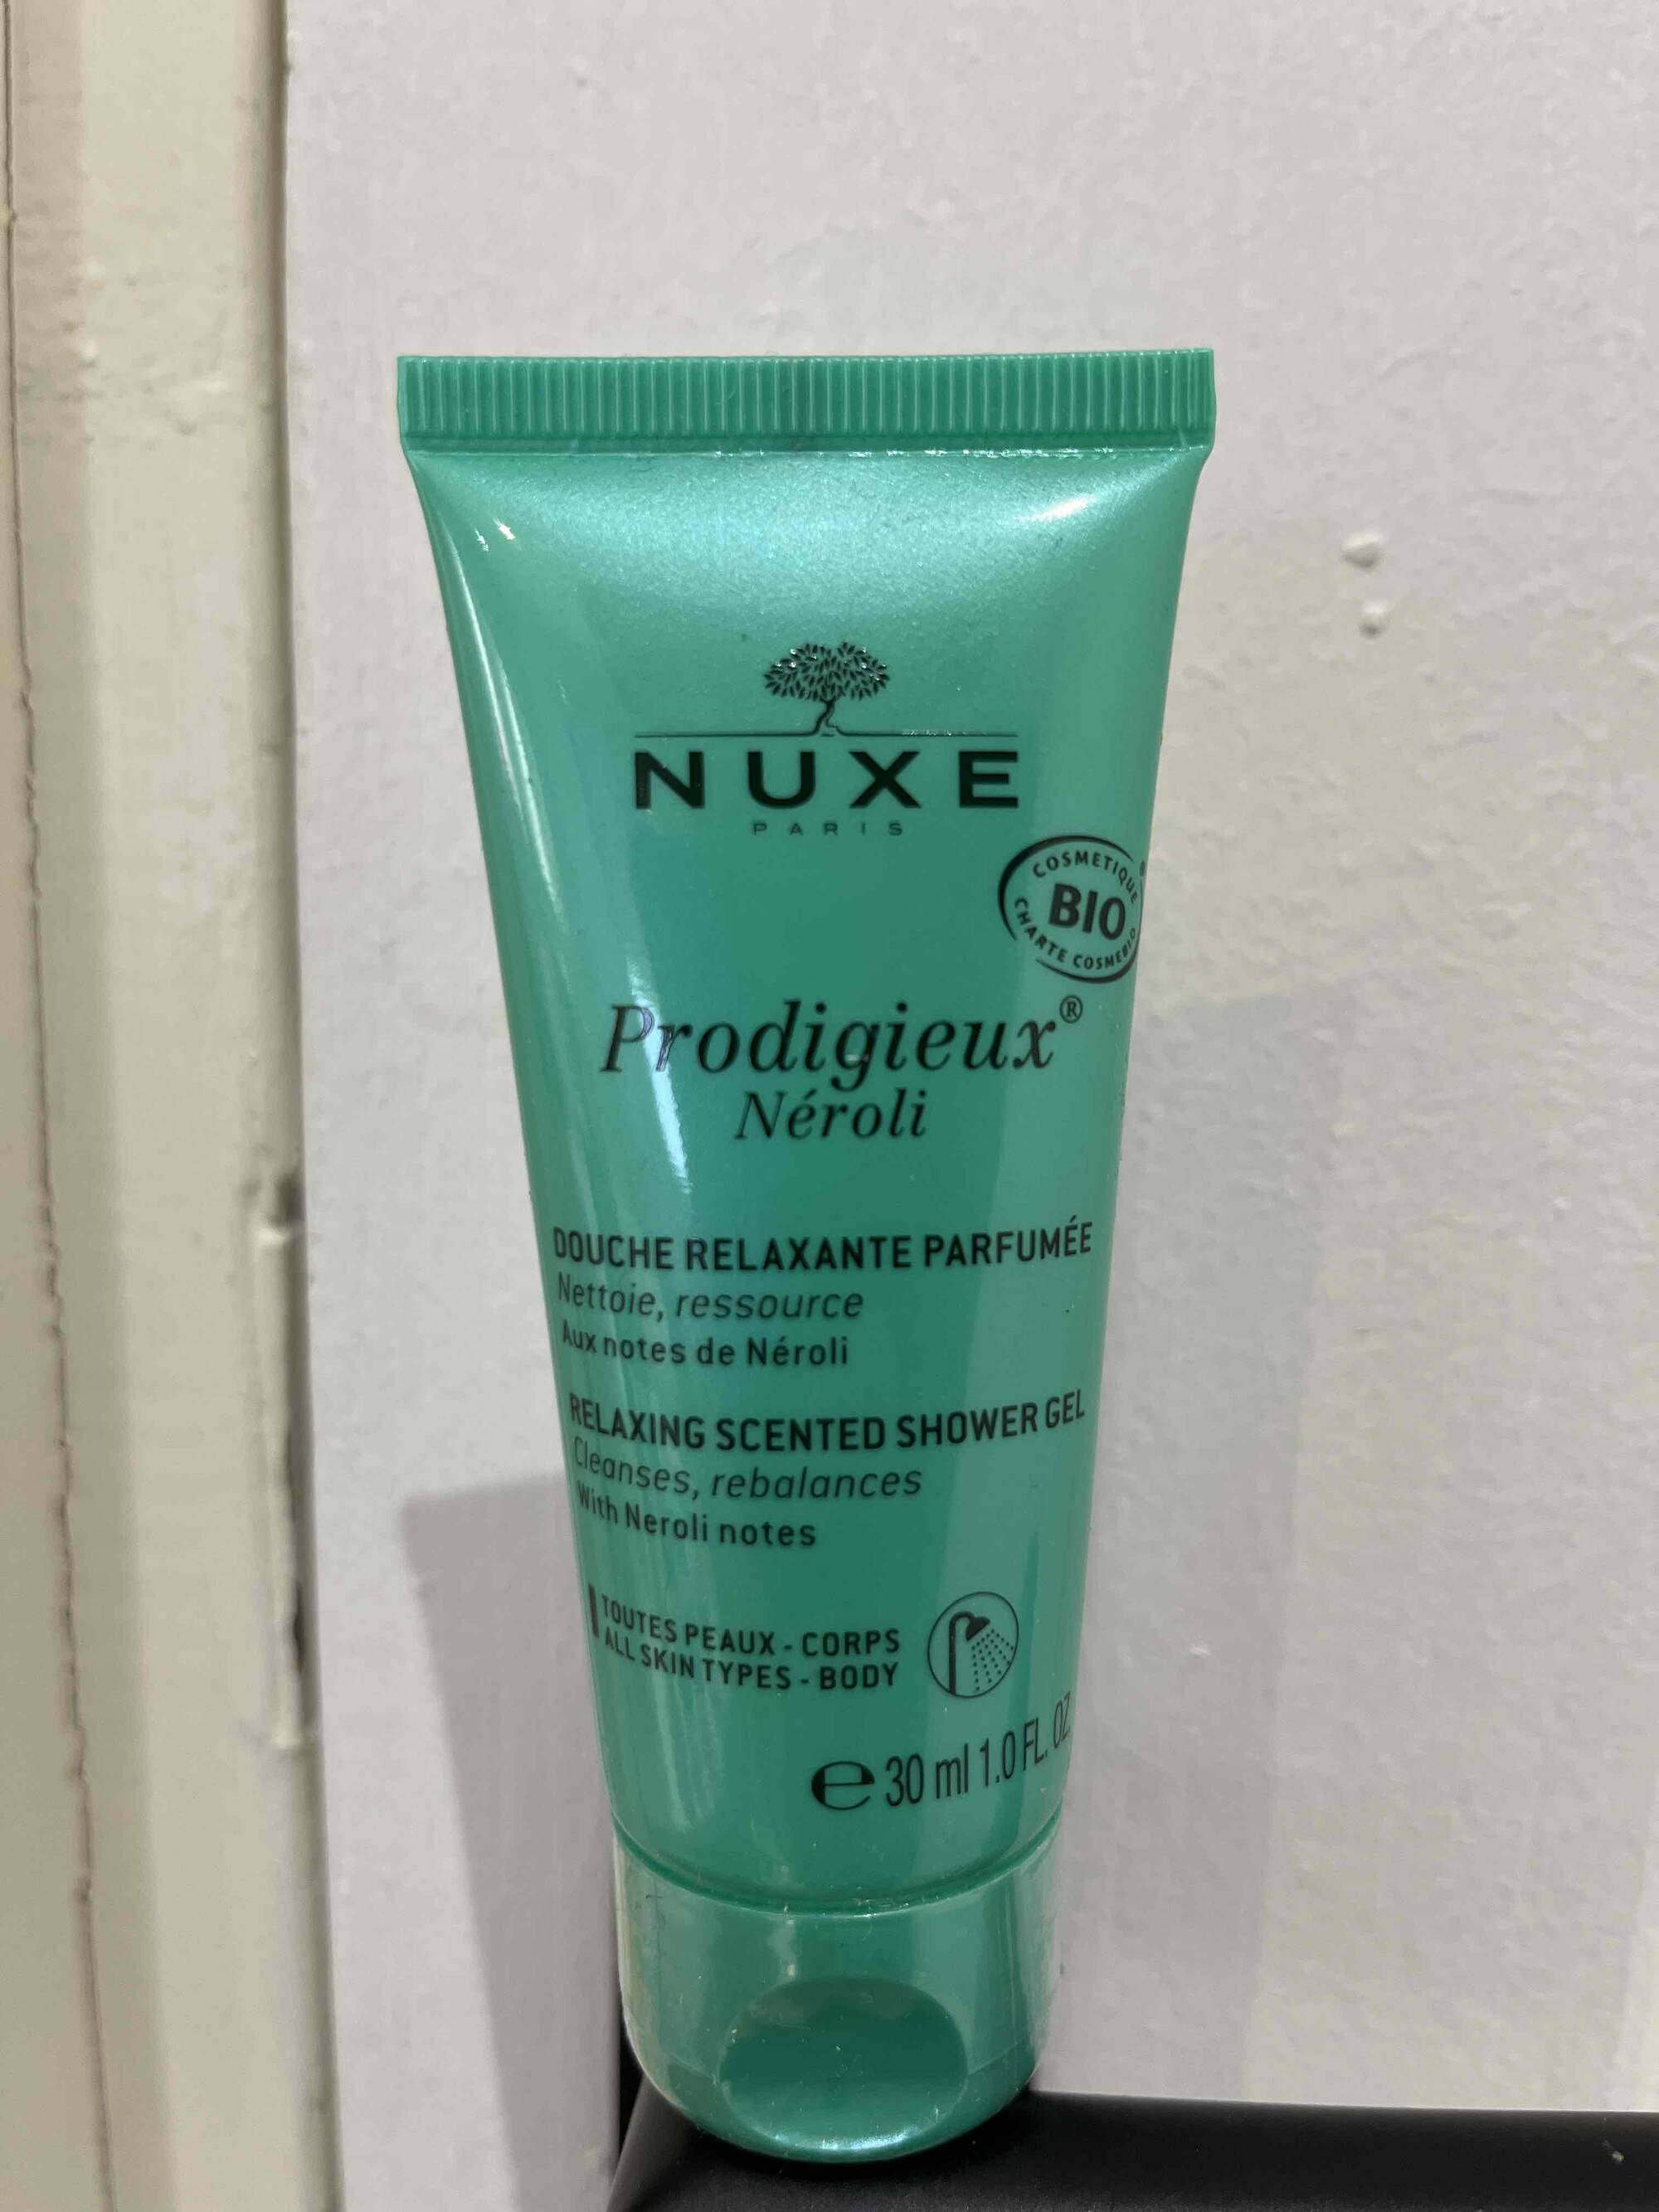 NUXE - Progidieux néroli - Douche relaxante parfumée 